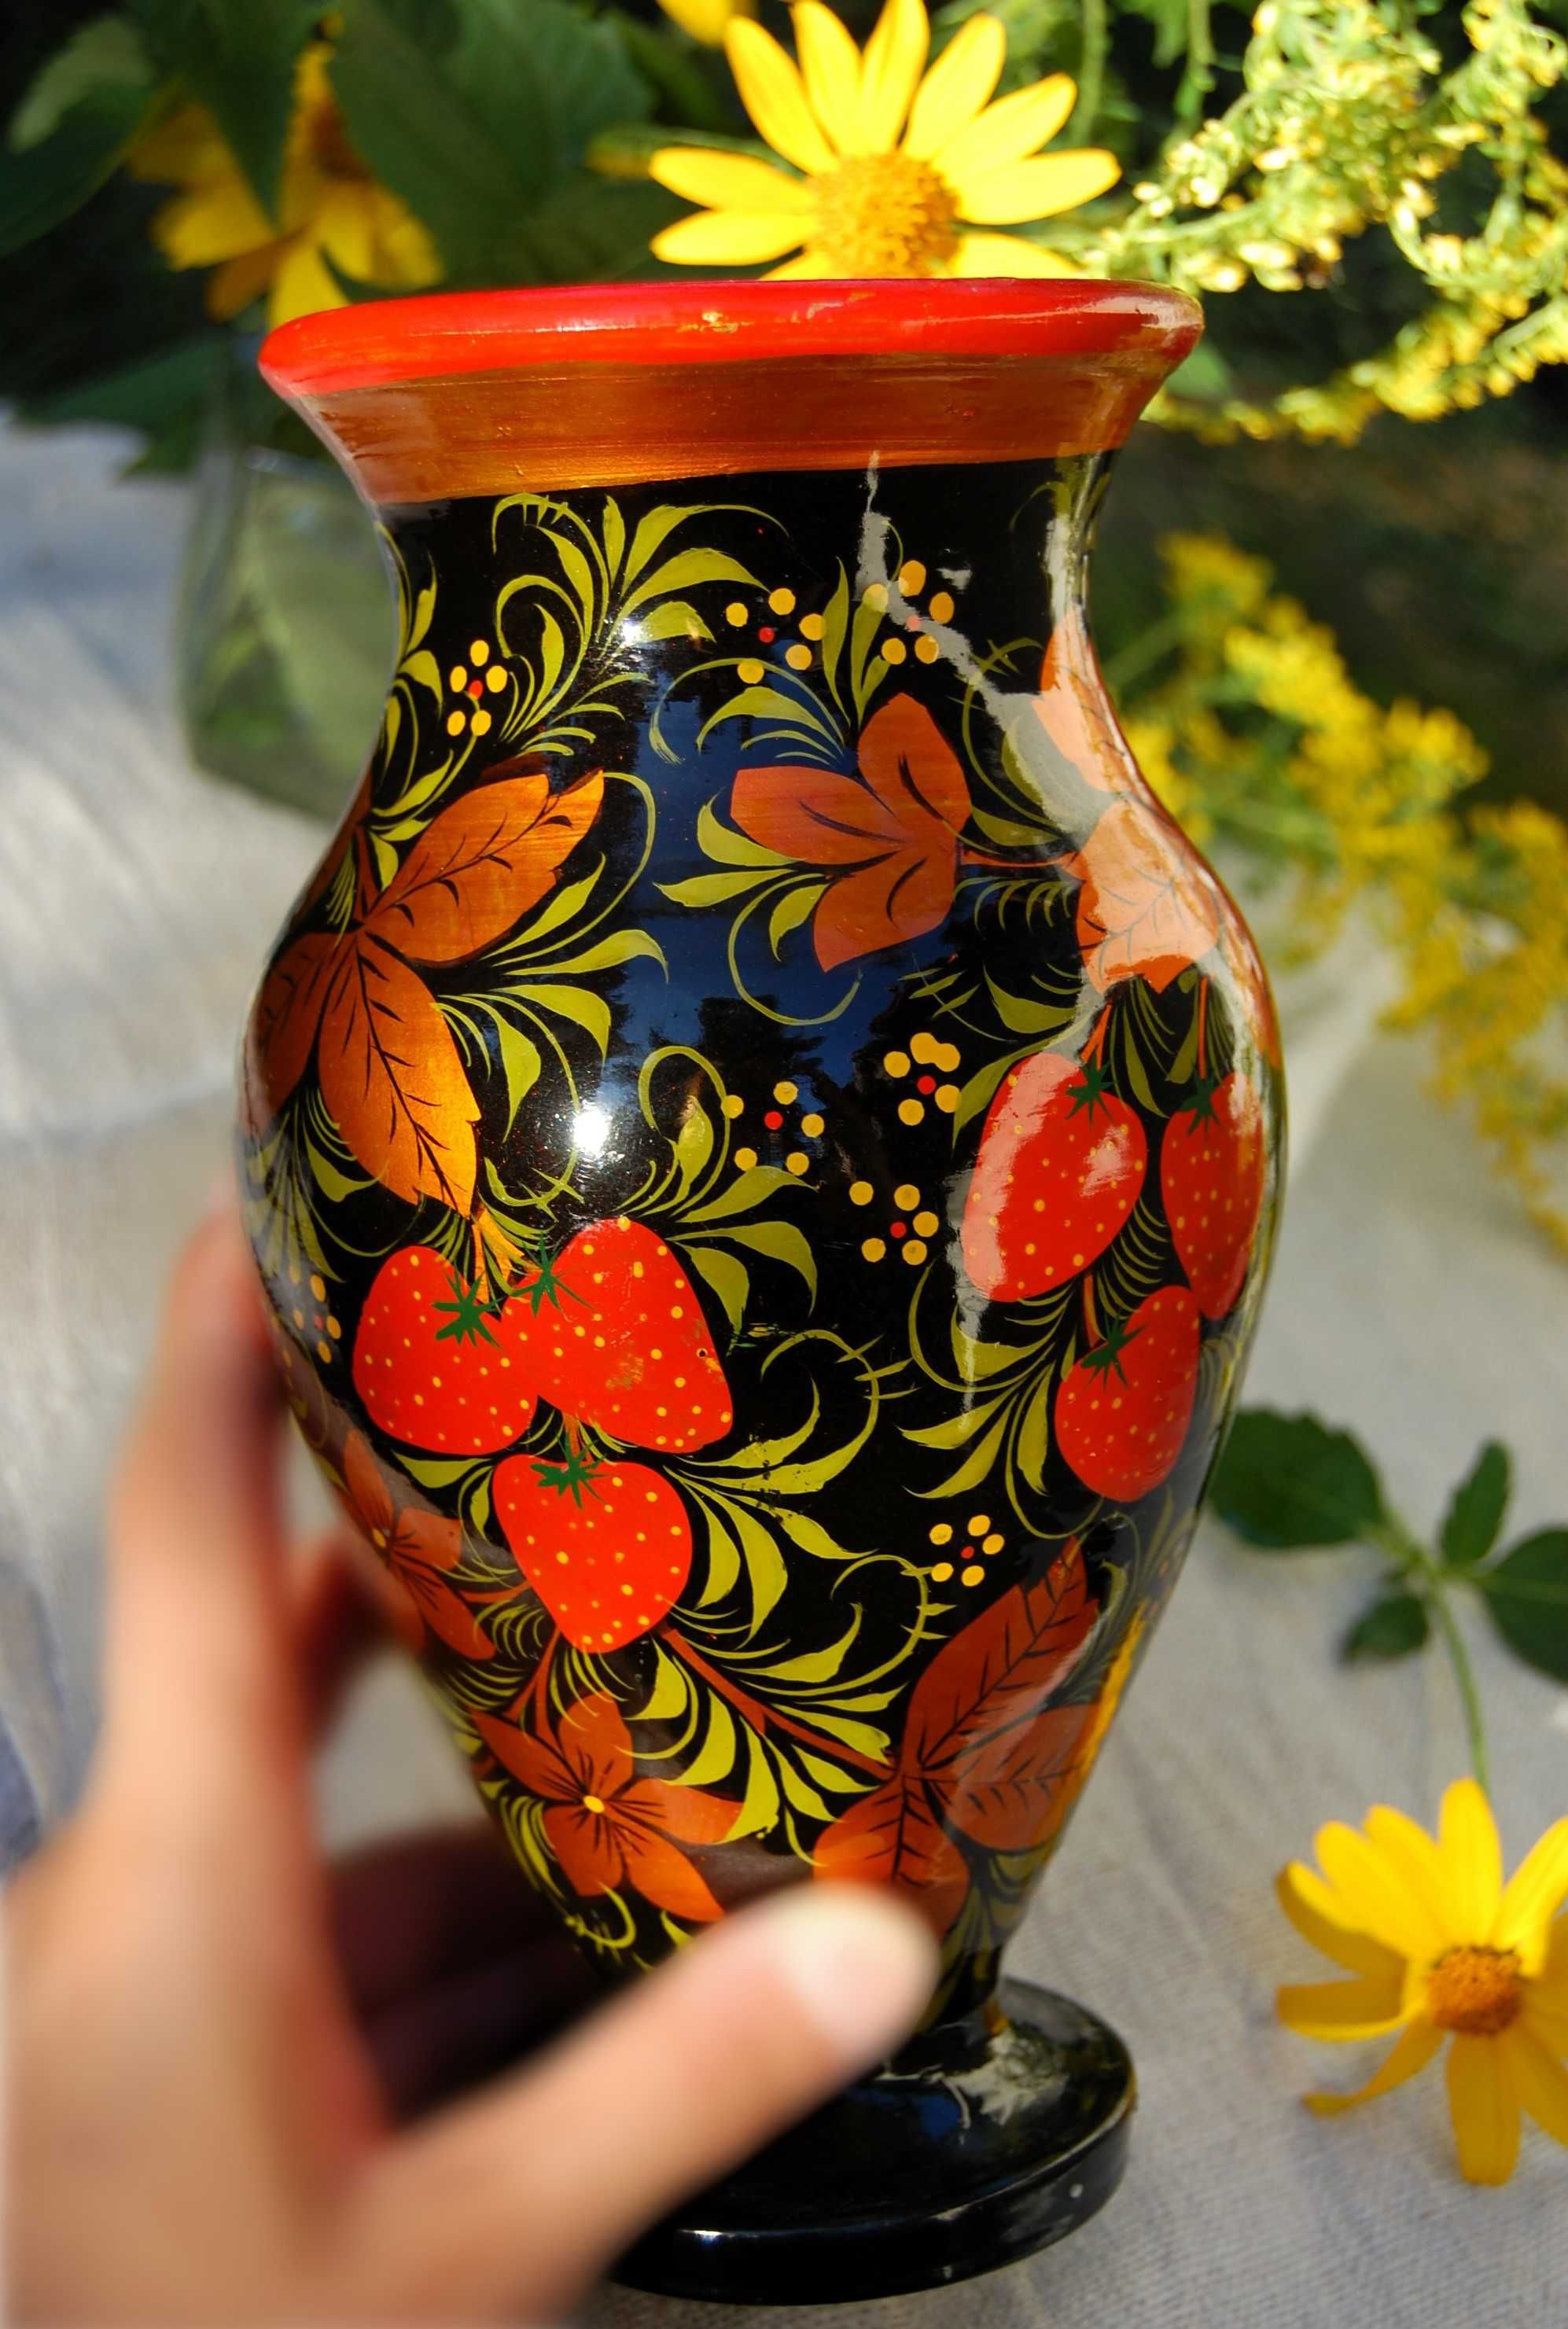 Chochłoma, ręcznie malowany, rosyjski wazon gliniany, ludowy, 21,5 cm